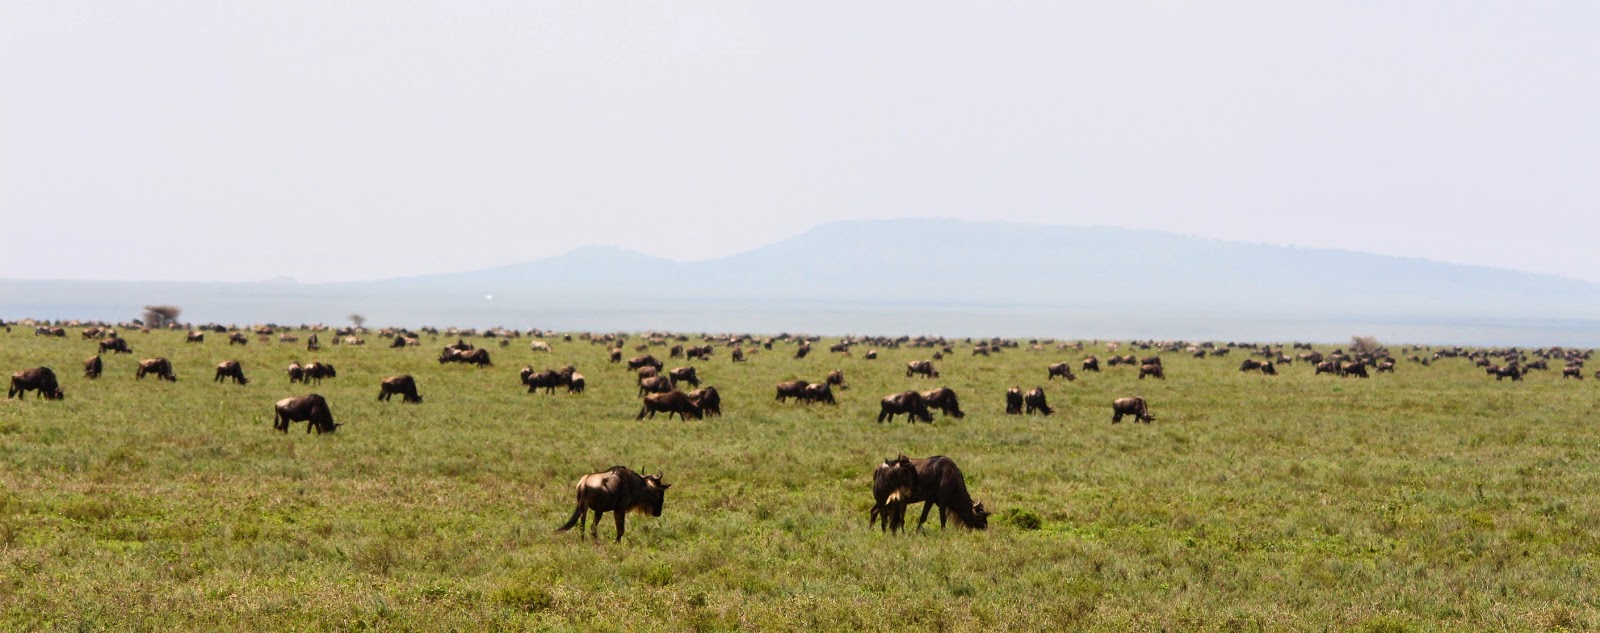 Um safari para ver a grande MIGRAÇÃO DOS GNUS no Serengeti | Tanzânia